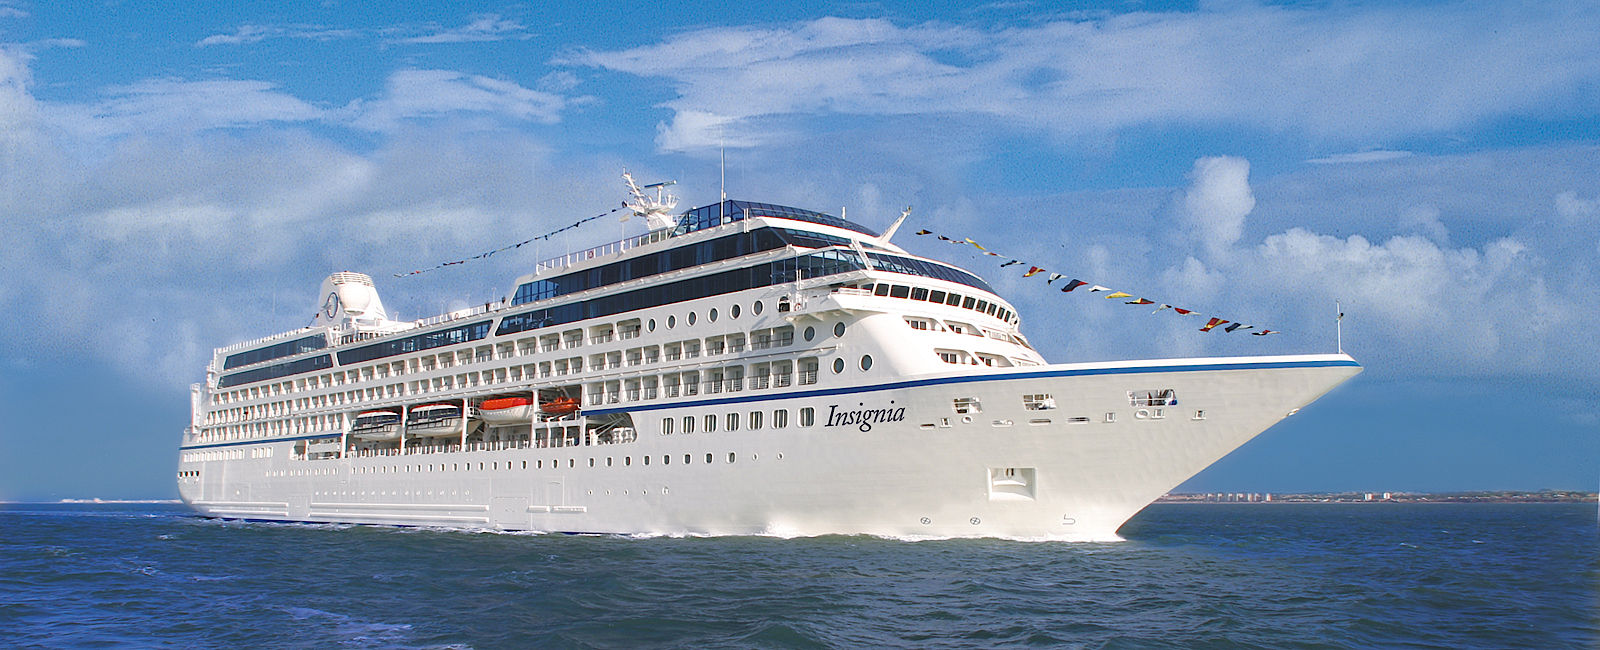 KREUZFAHRT NEWS
 Oceania Cruises: In 180 Tagen um die Welt 
